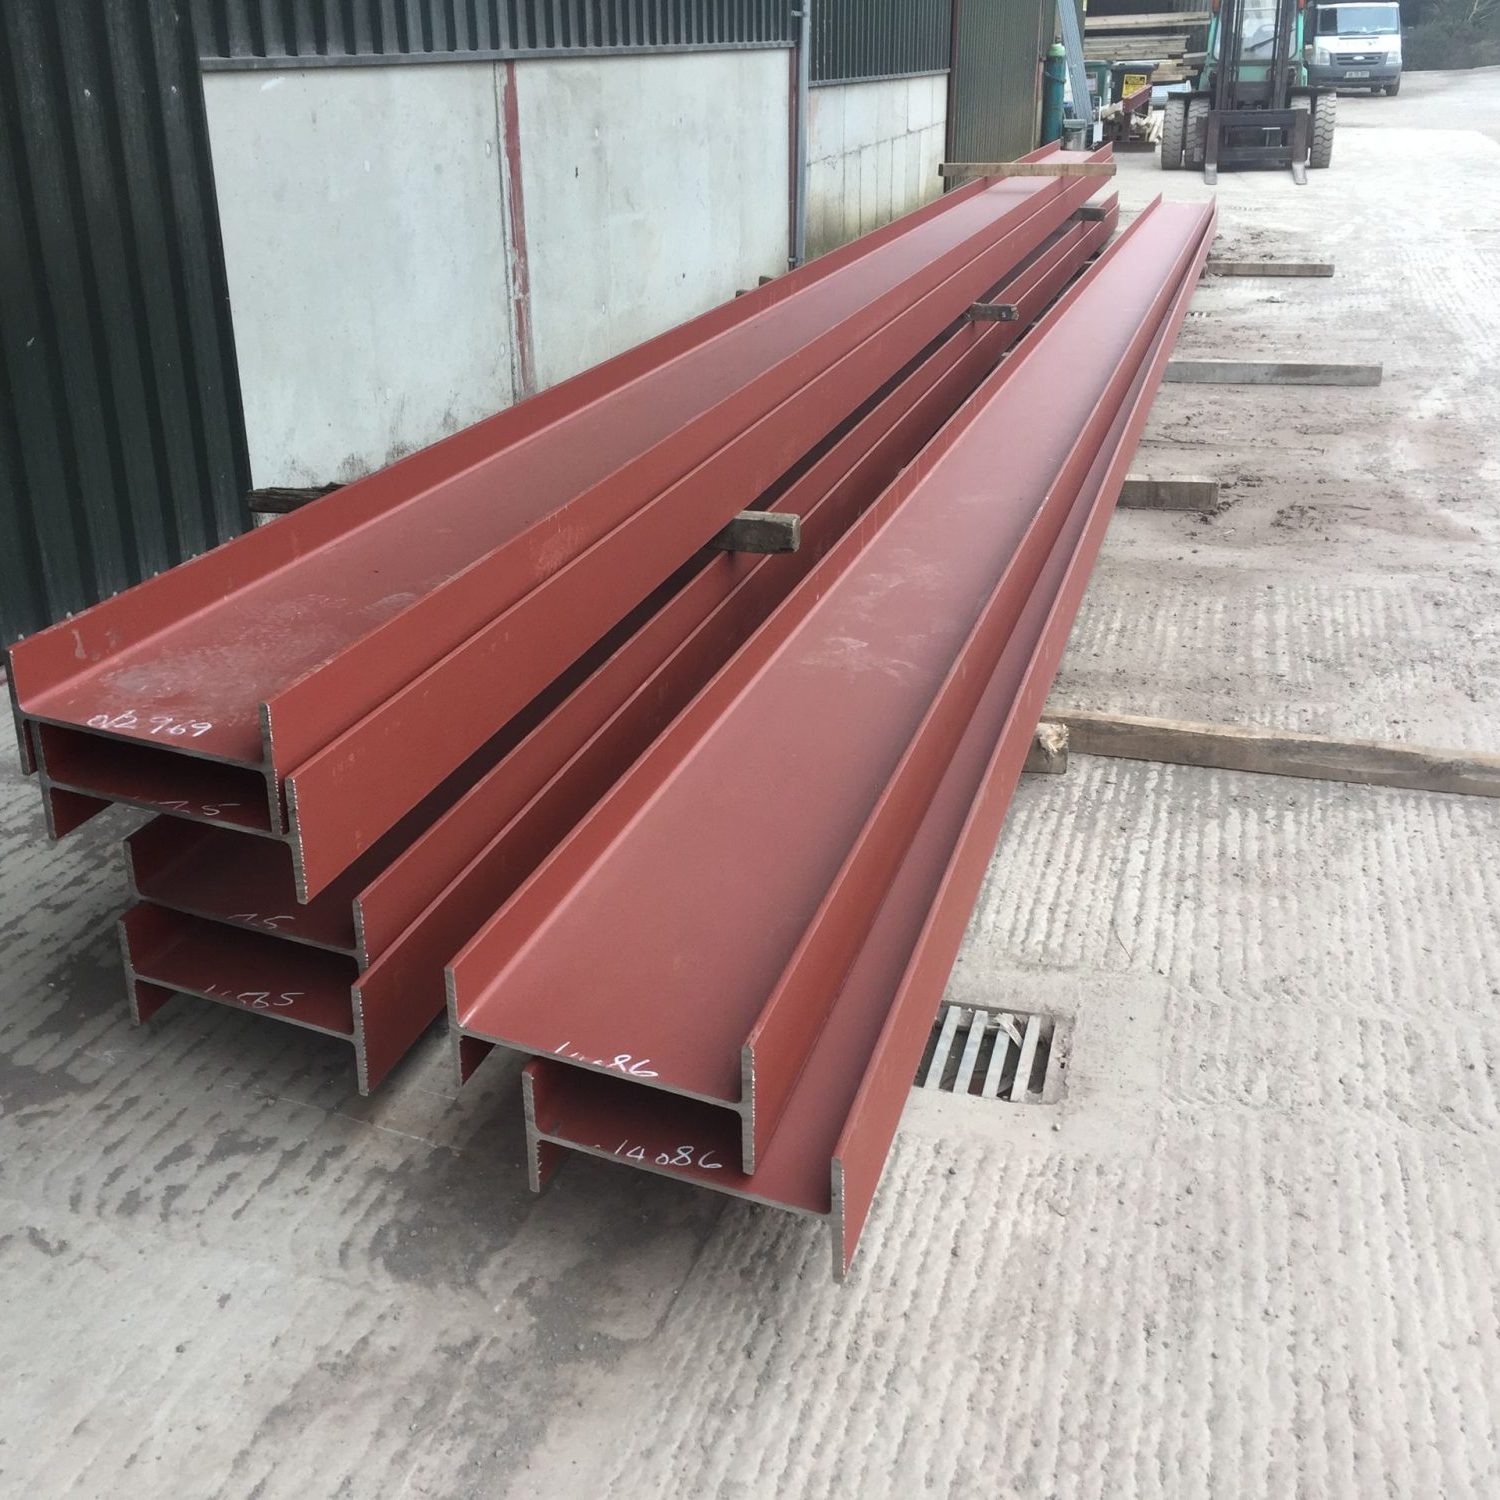 Large red steel girders